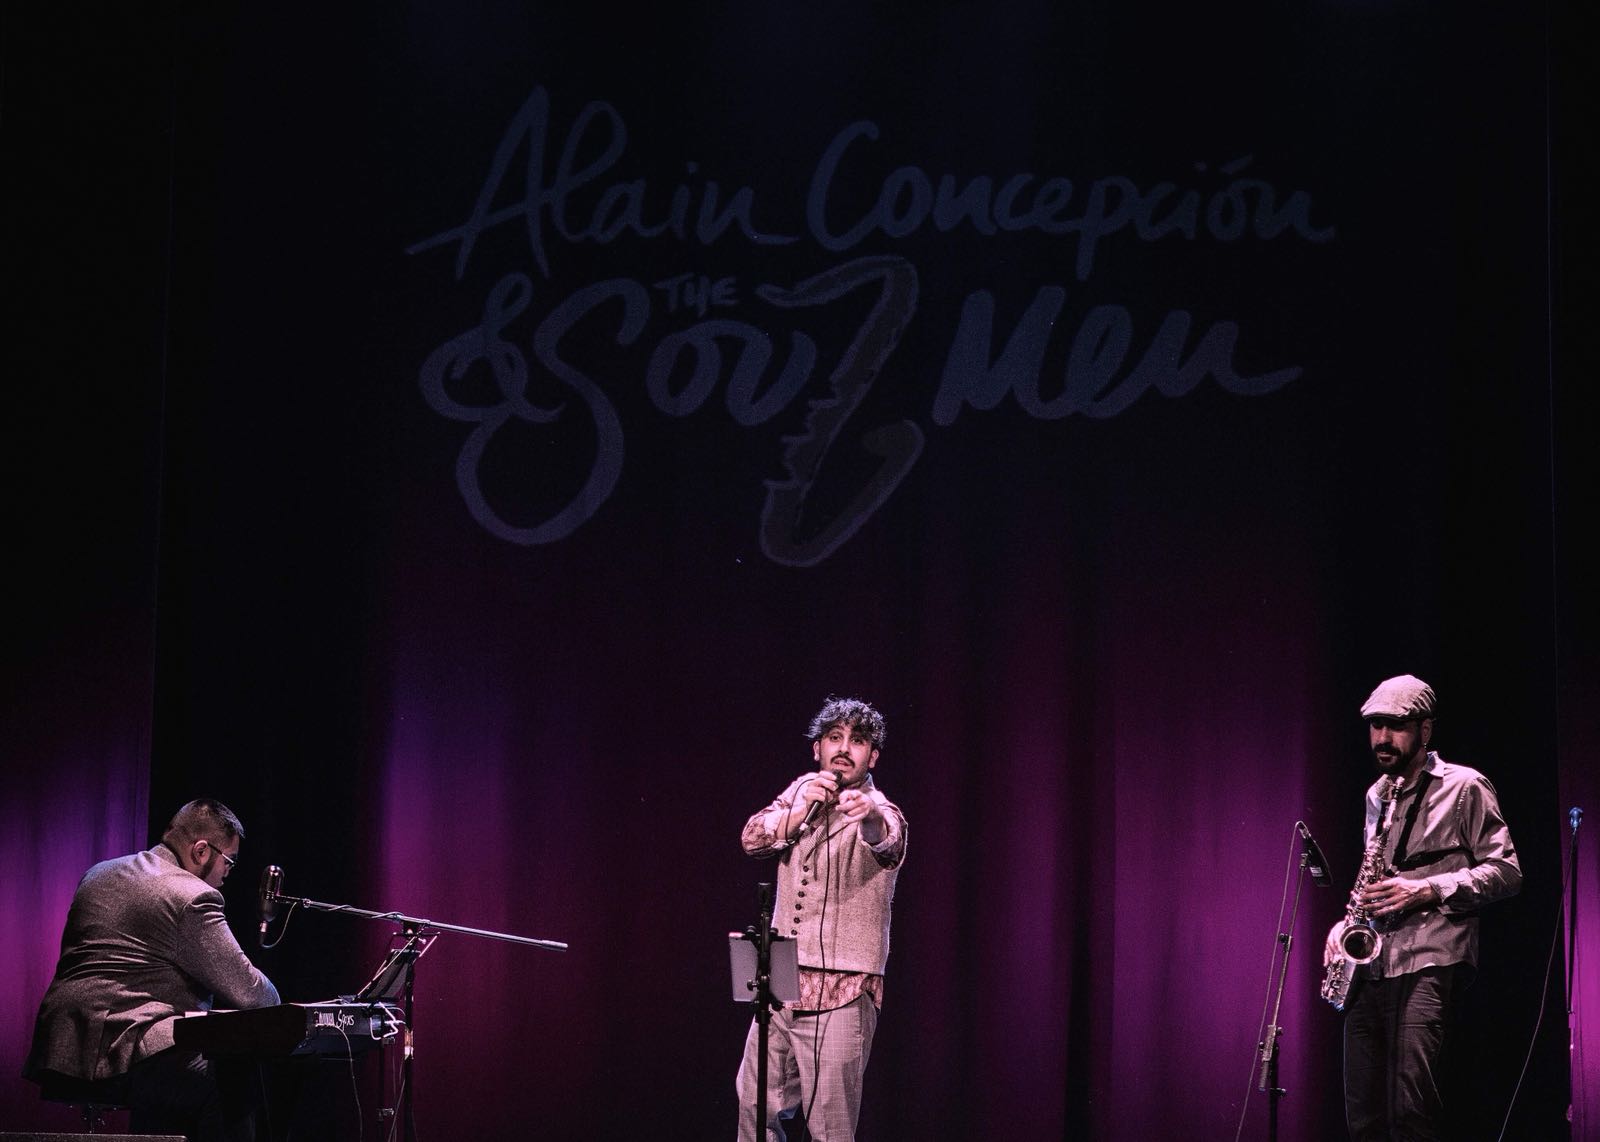 Alain Concepcion & The Soul Men